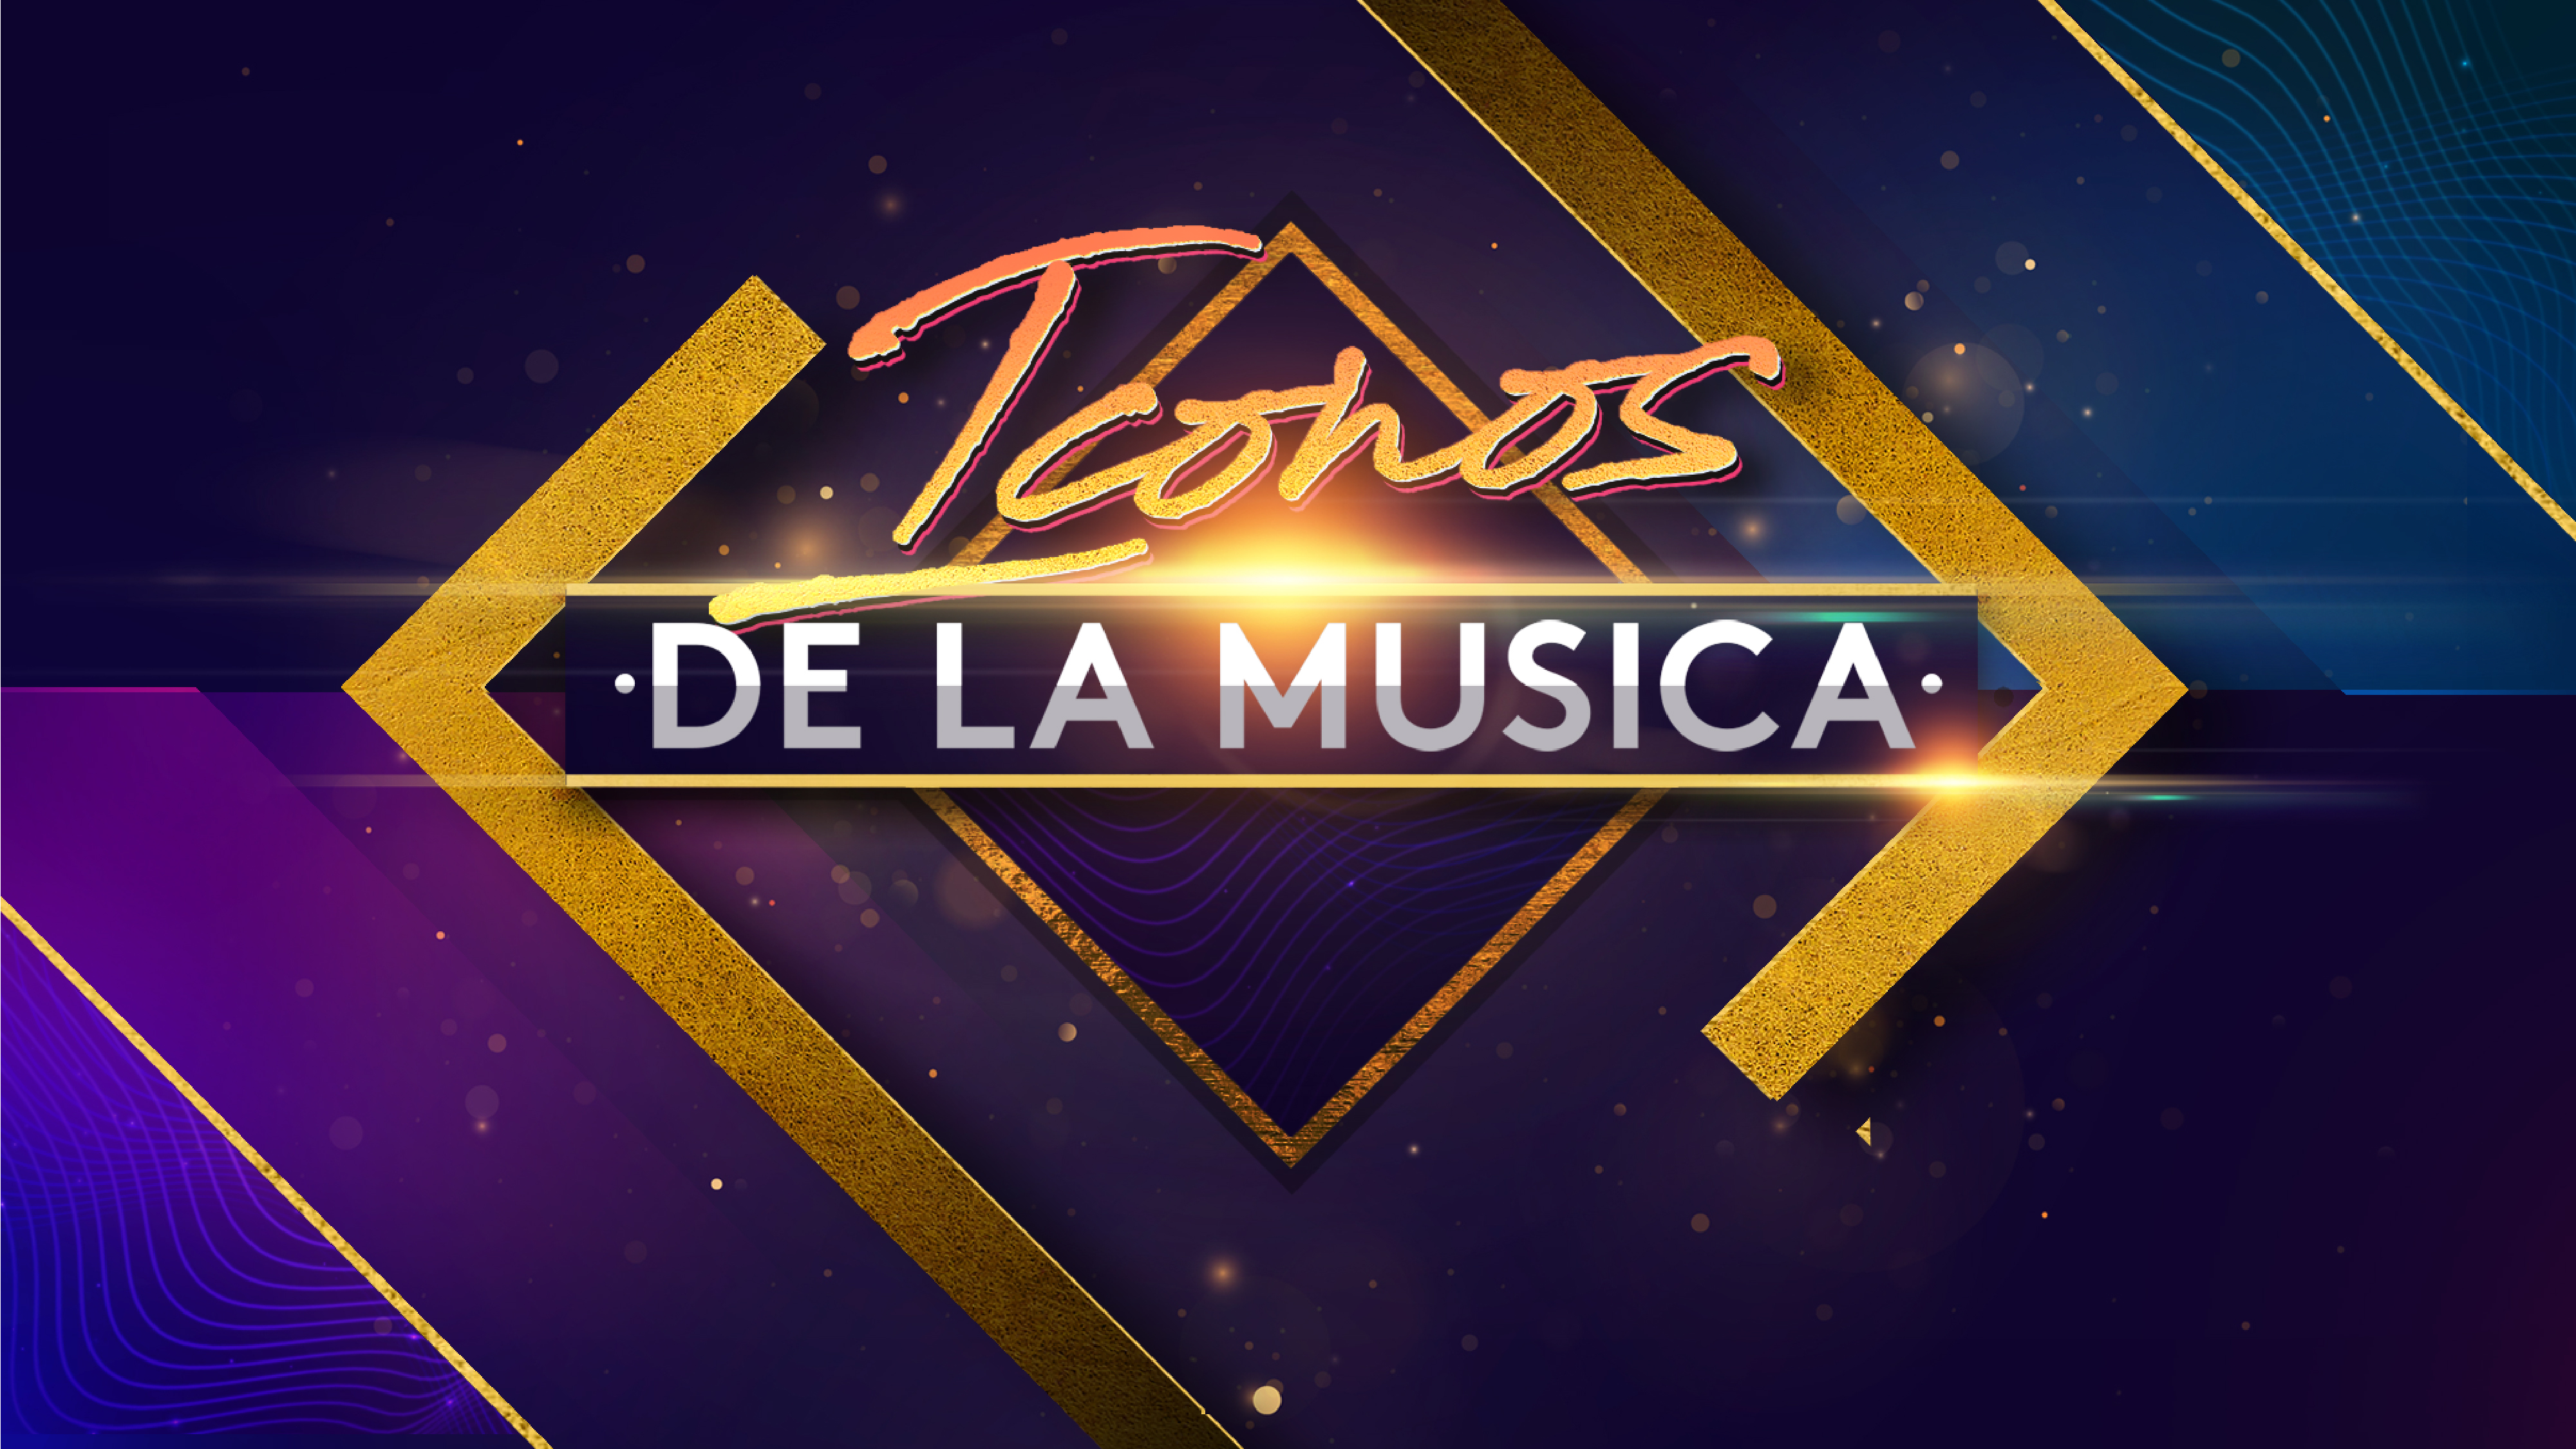 Íconos de la Música, una nueva propuesta de Univision. / Foto: Univision